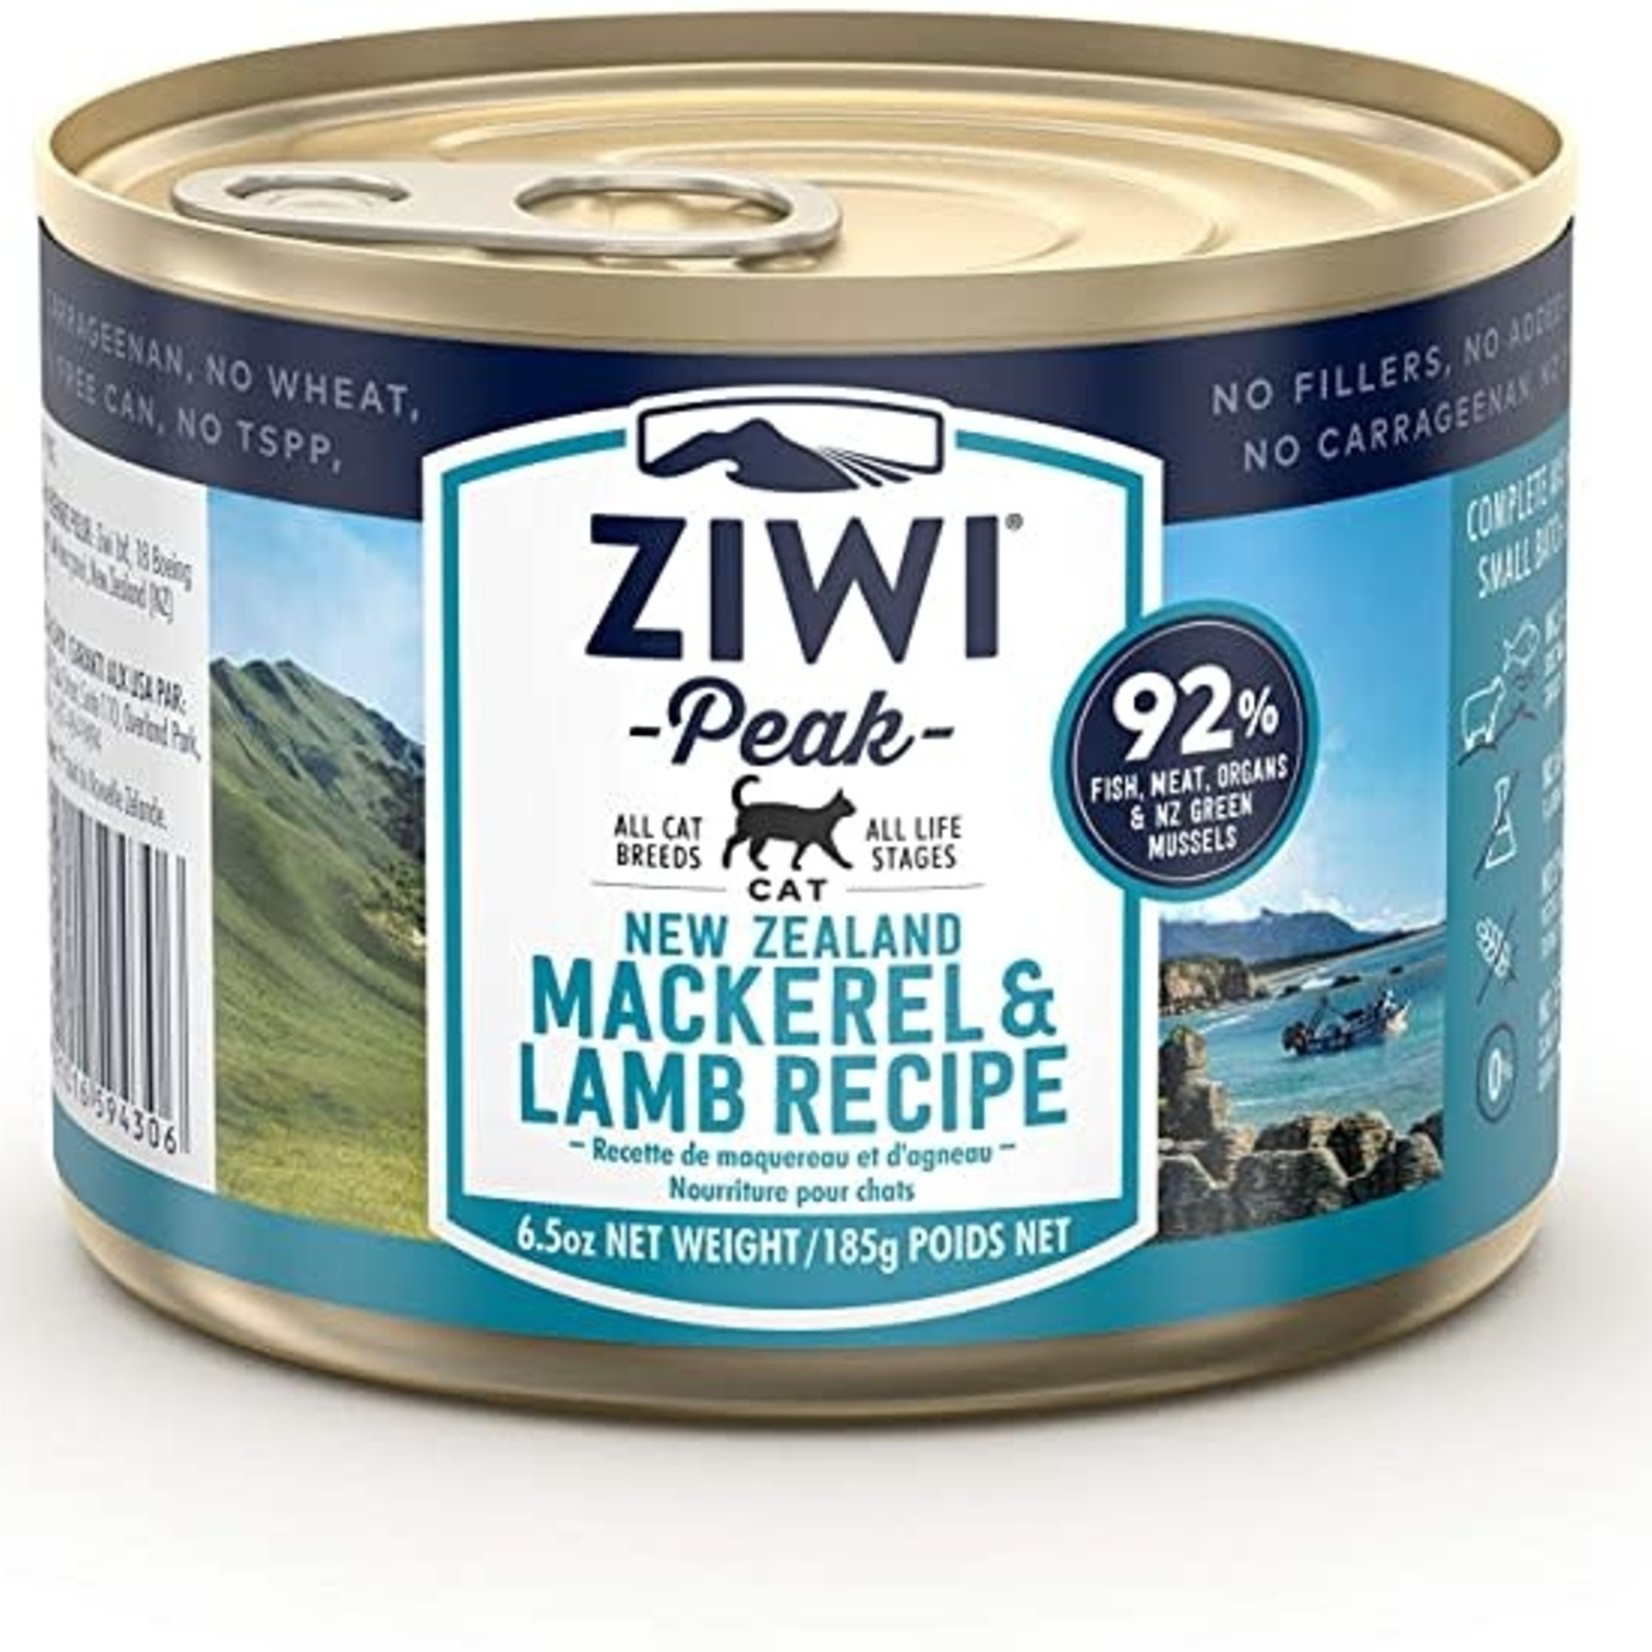 Ziwi Peak Ziwi Peak Cat Grain Free Mackerel & Lamb 6.5 OZ